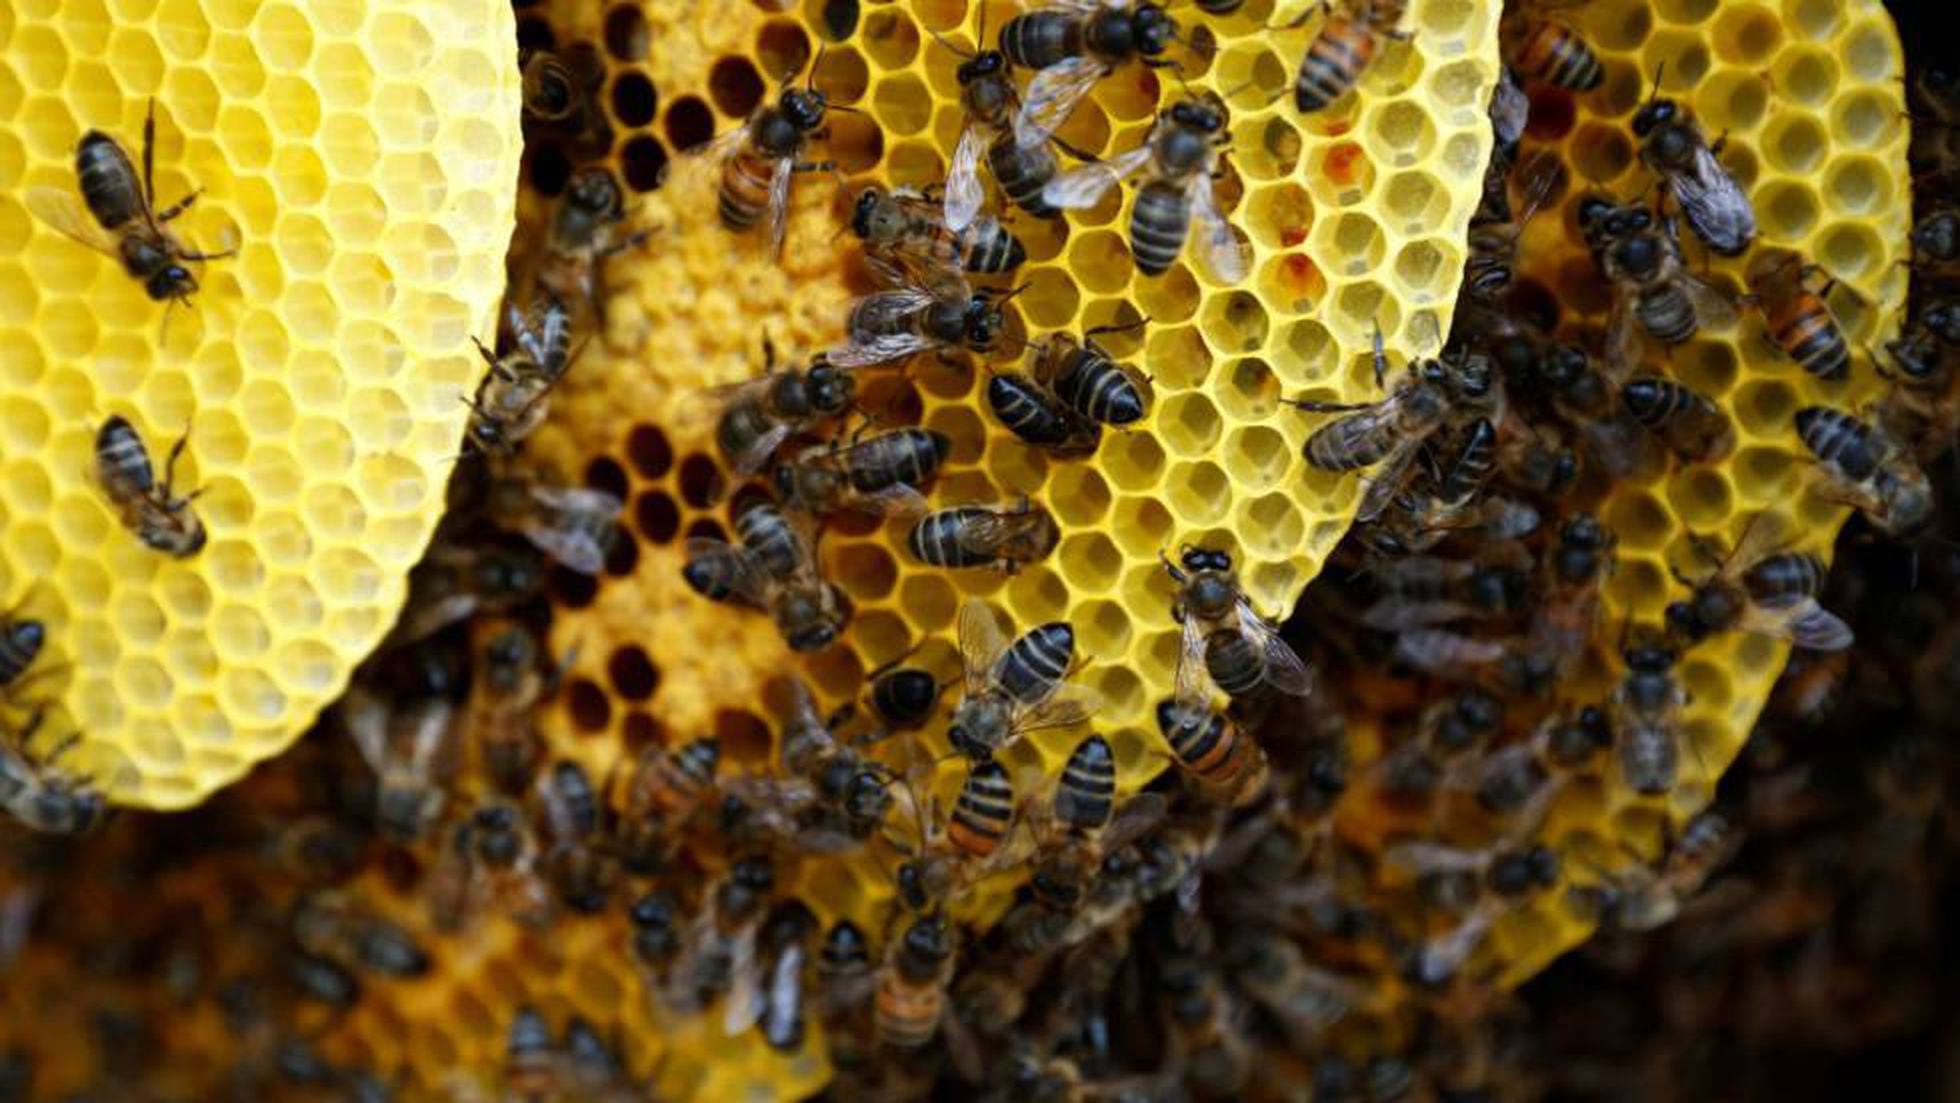 Cómo mover una colmena de abejas paso a paso de forma segura